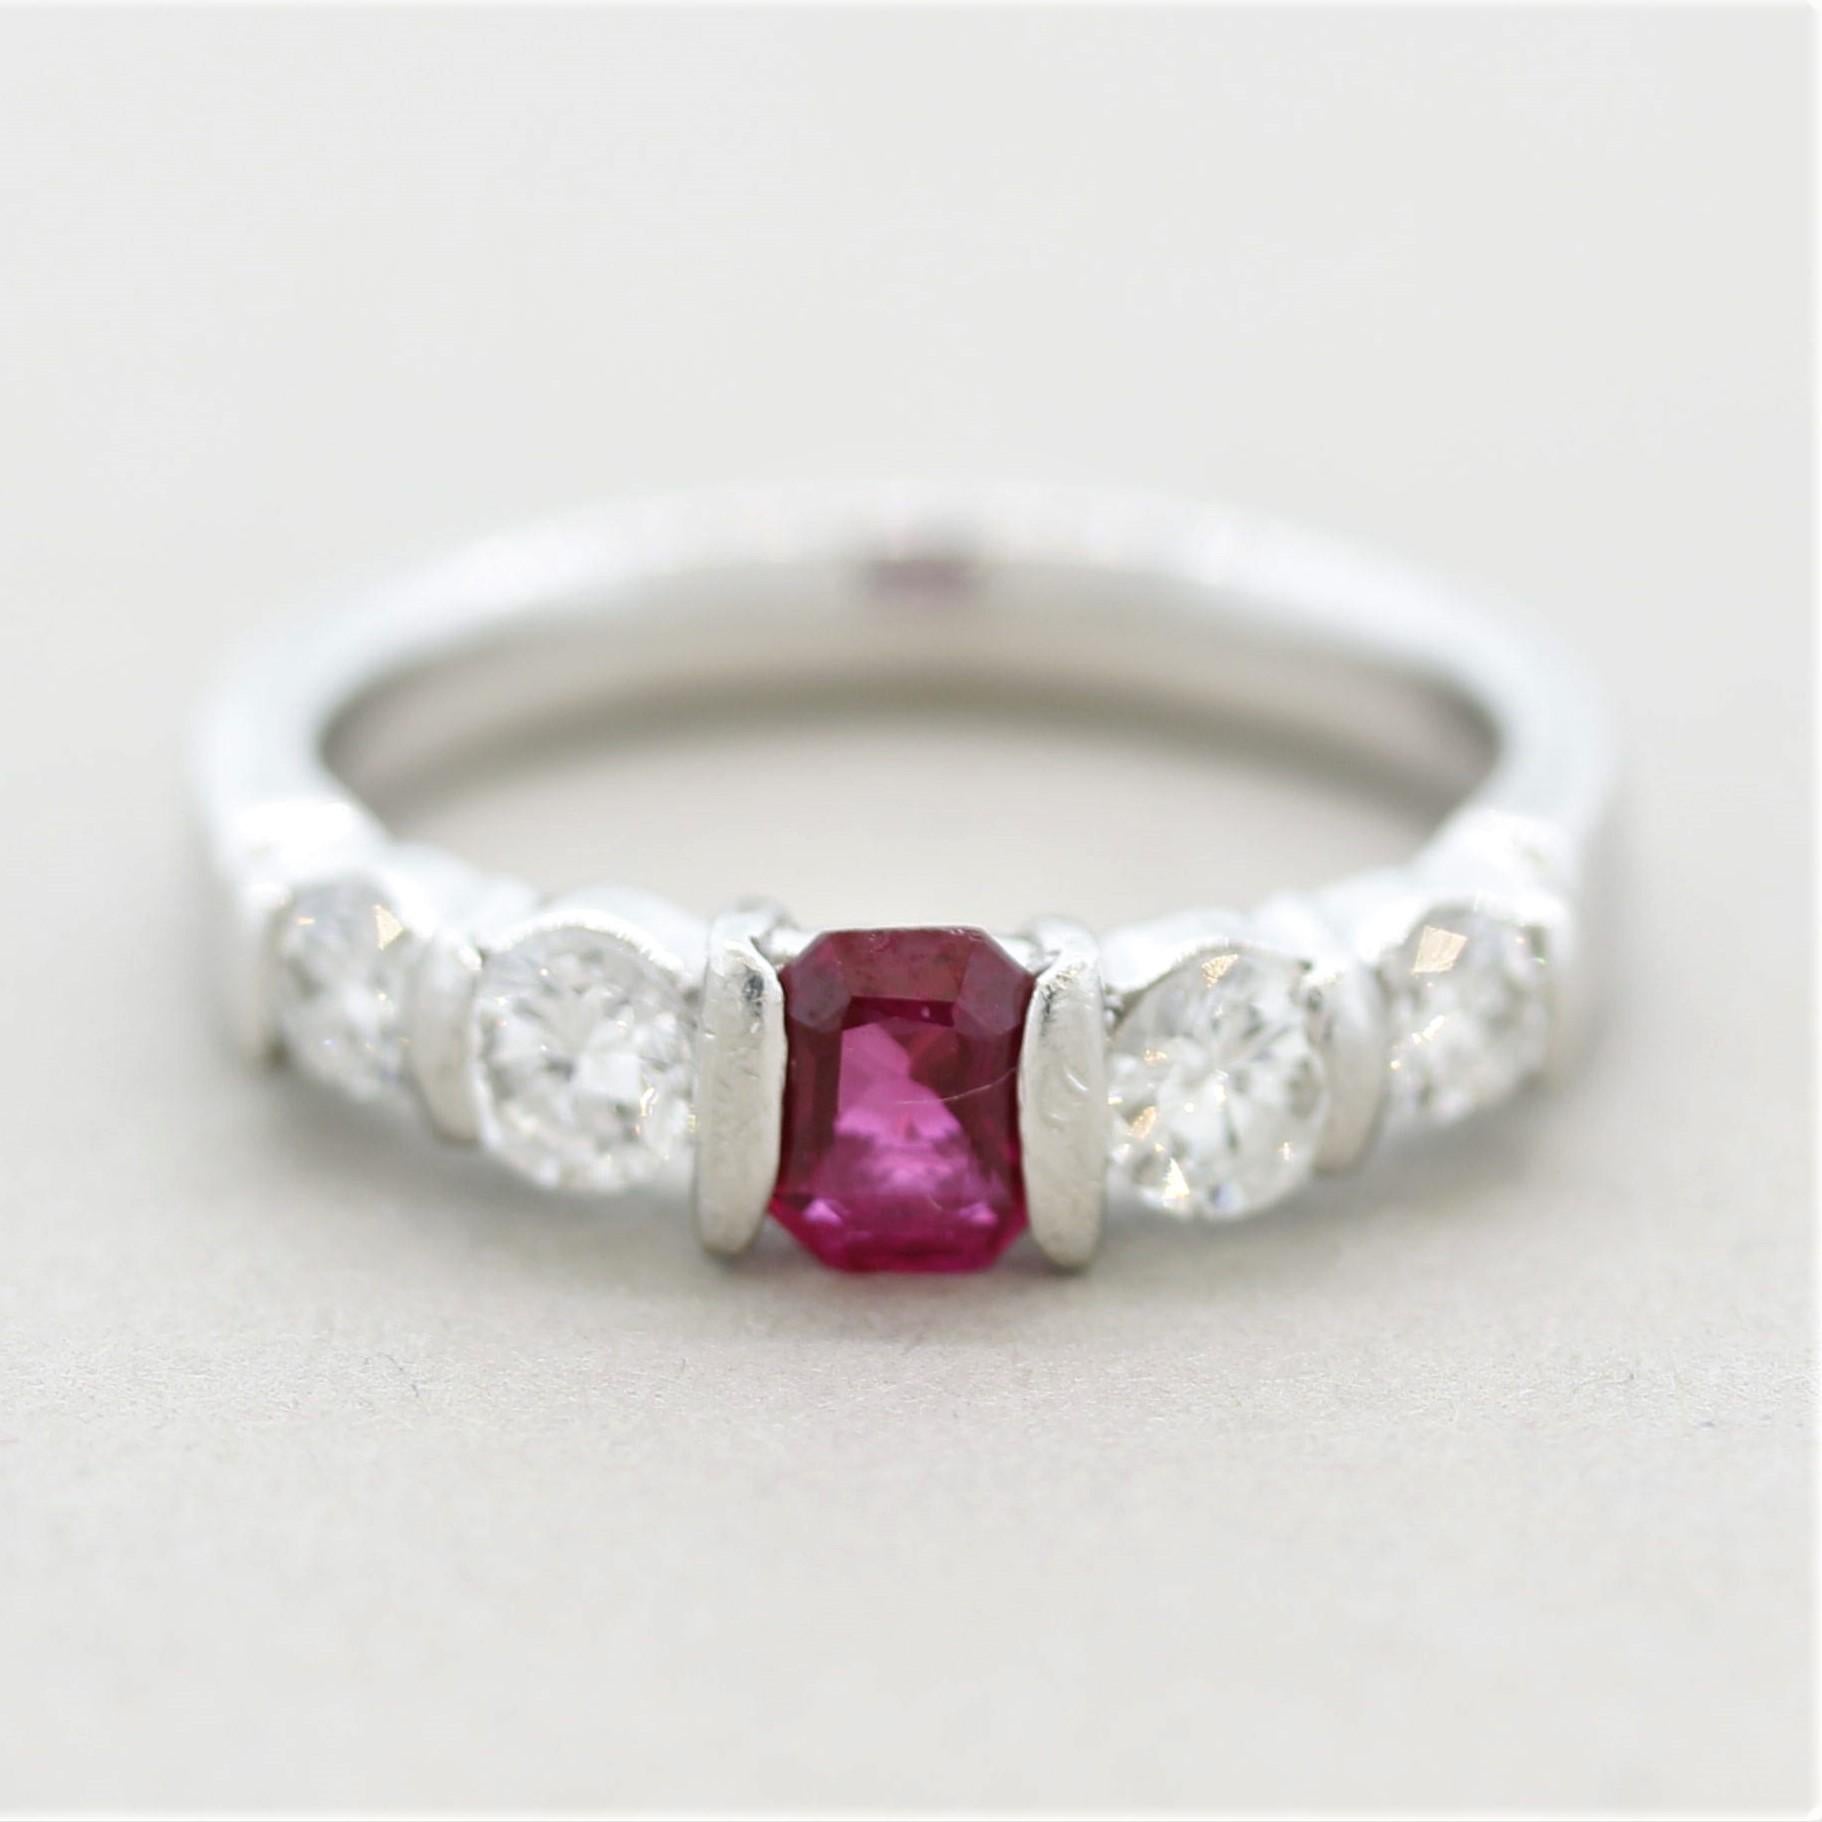 Un bracelet en platine simple, chic et élégant, orné de rubis et de diamants ! Le rubis pèse 0,48 carats et a une couleur rose-rouge vif et brillant. Elle est rehaussée de 4 grands diamants ronds de taille brillant pesant au total 0,60 carat.